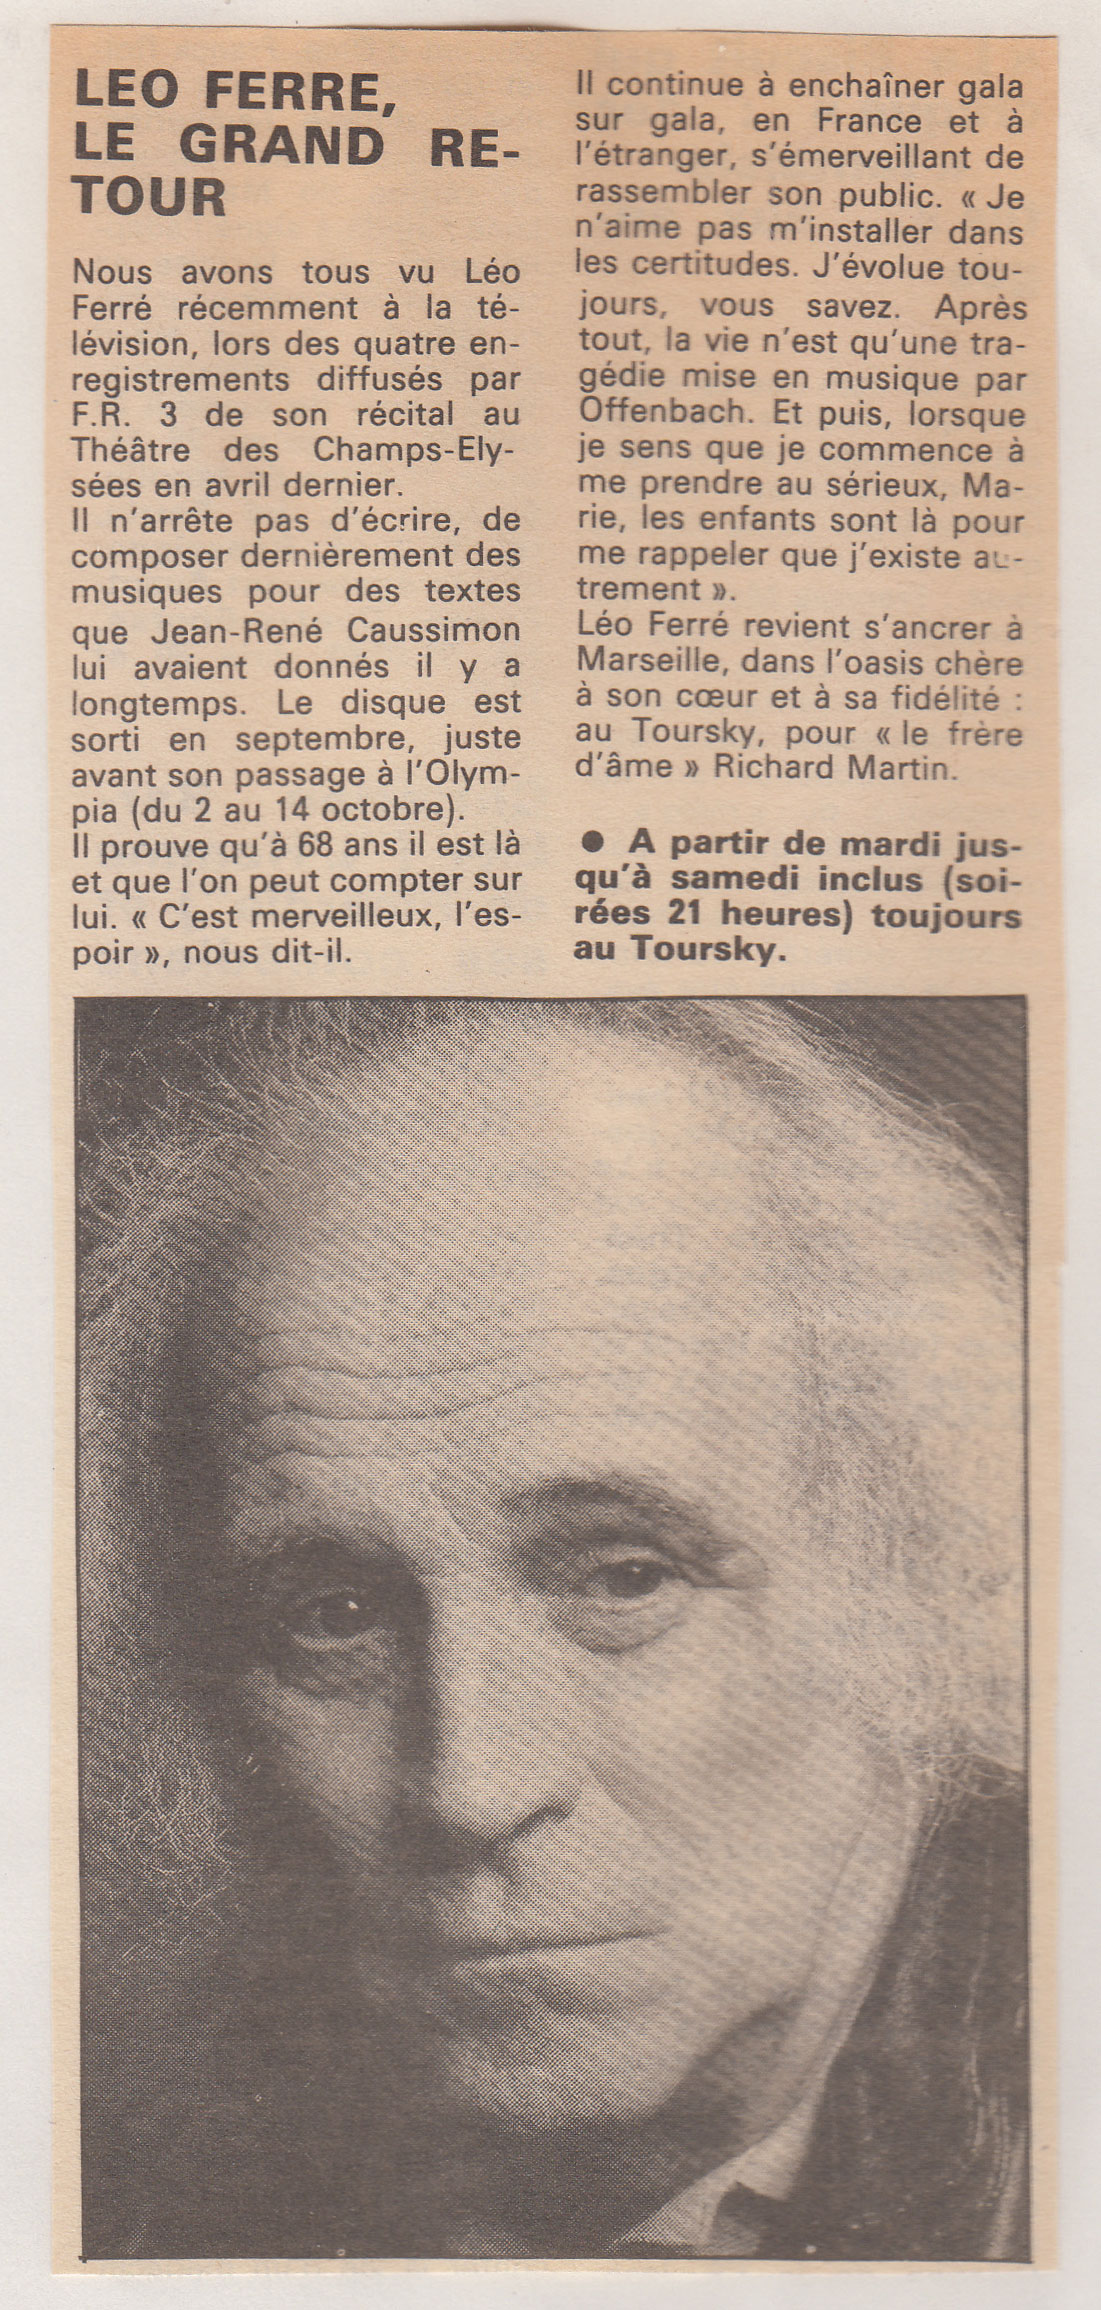 Léo Ferré - Supplément Spectacles du quotidien marseillais, février 1985